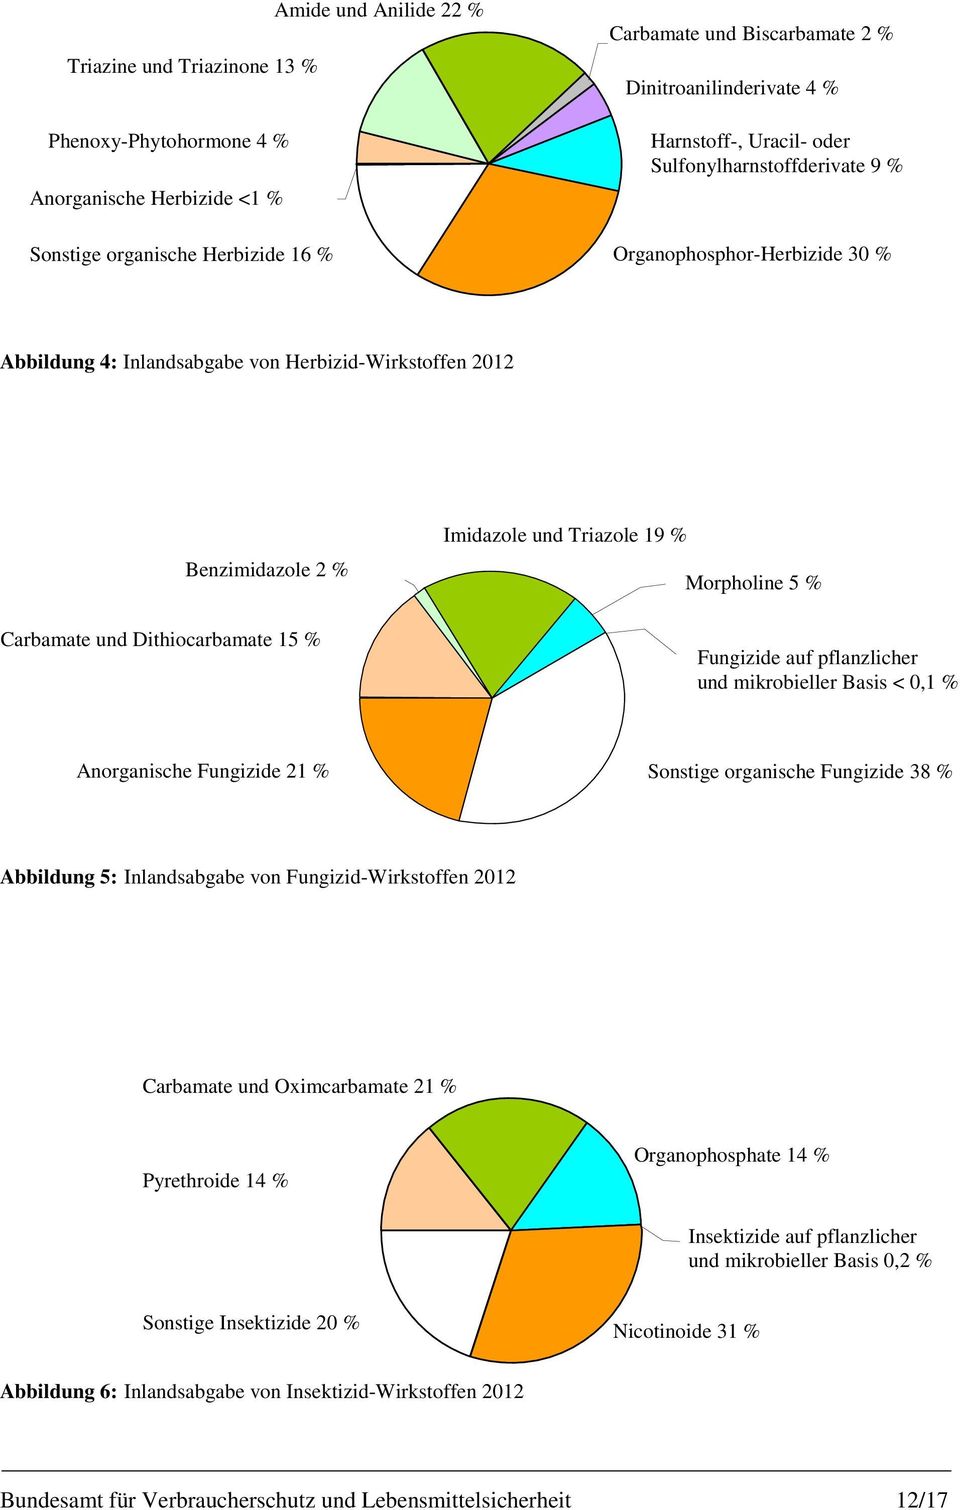 Imidazole und Triazole 19 % Morpholine 5 % Fungizide auf pflanzlicher und mikrobieller Basis < 0,1 % Anorganische Fungizide 21 % Sonstige organische Fungizide 38 % Abbildung 5: Inlandsabgabe von